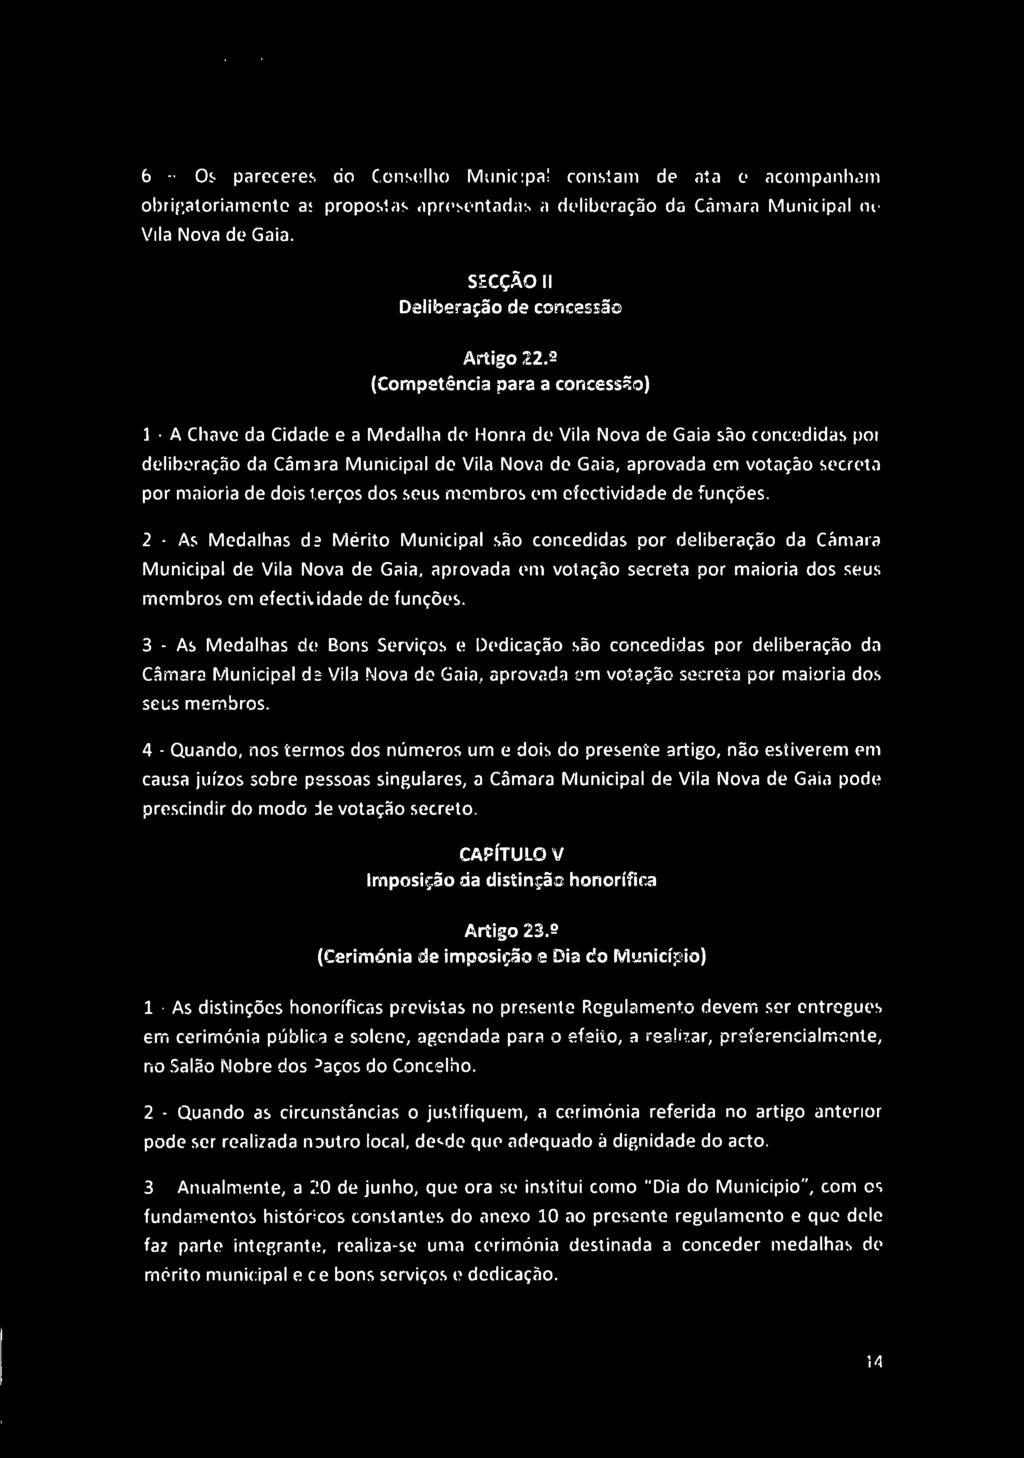 ^ IA 6 - Os pareceres do Conselho Municipal constam de ata e acompanham obrigatoriamente as propostas apresentadas a deliberação da Câmara Municipal de Vila Nova de Gaia.